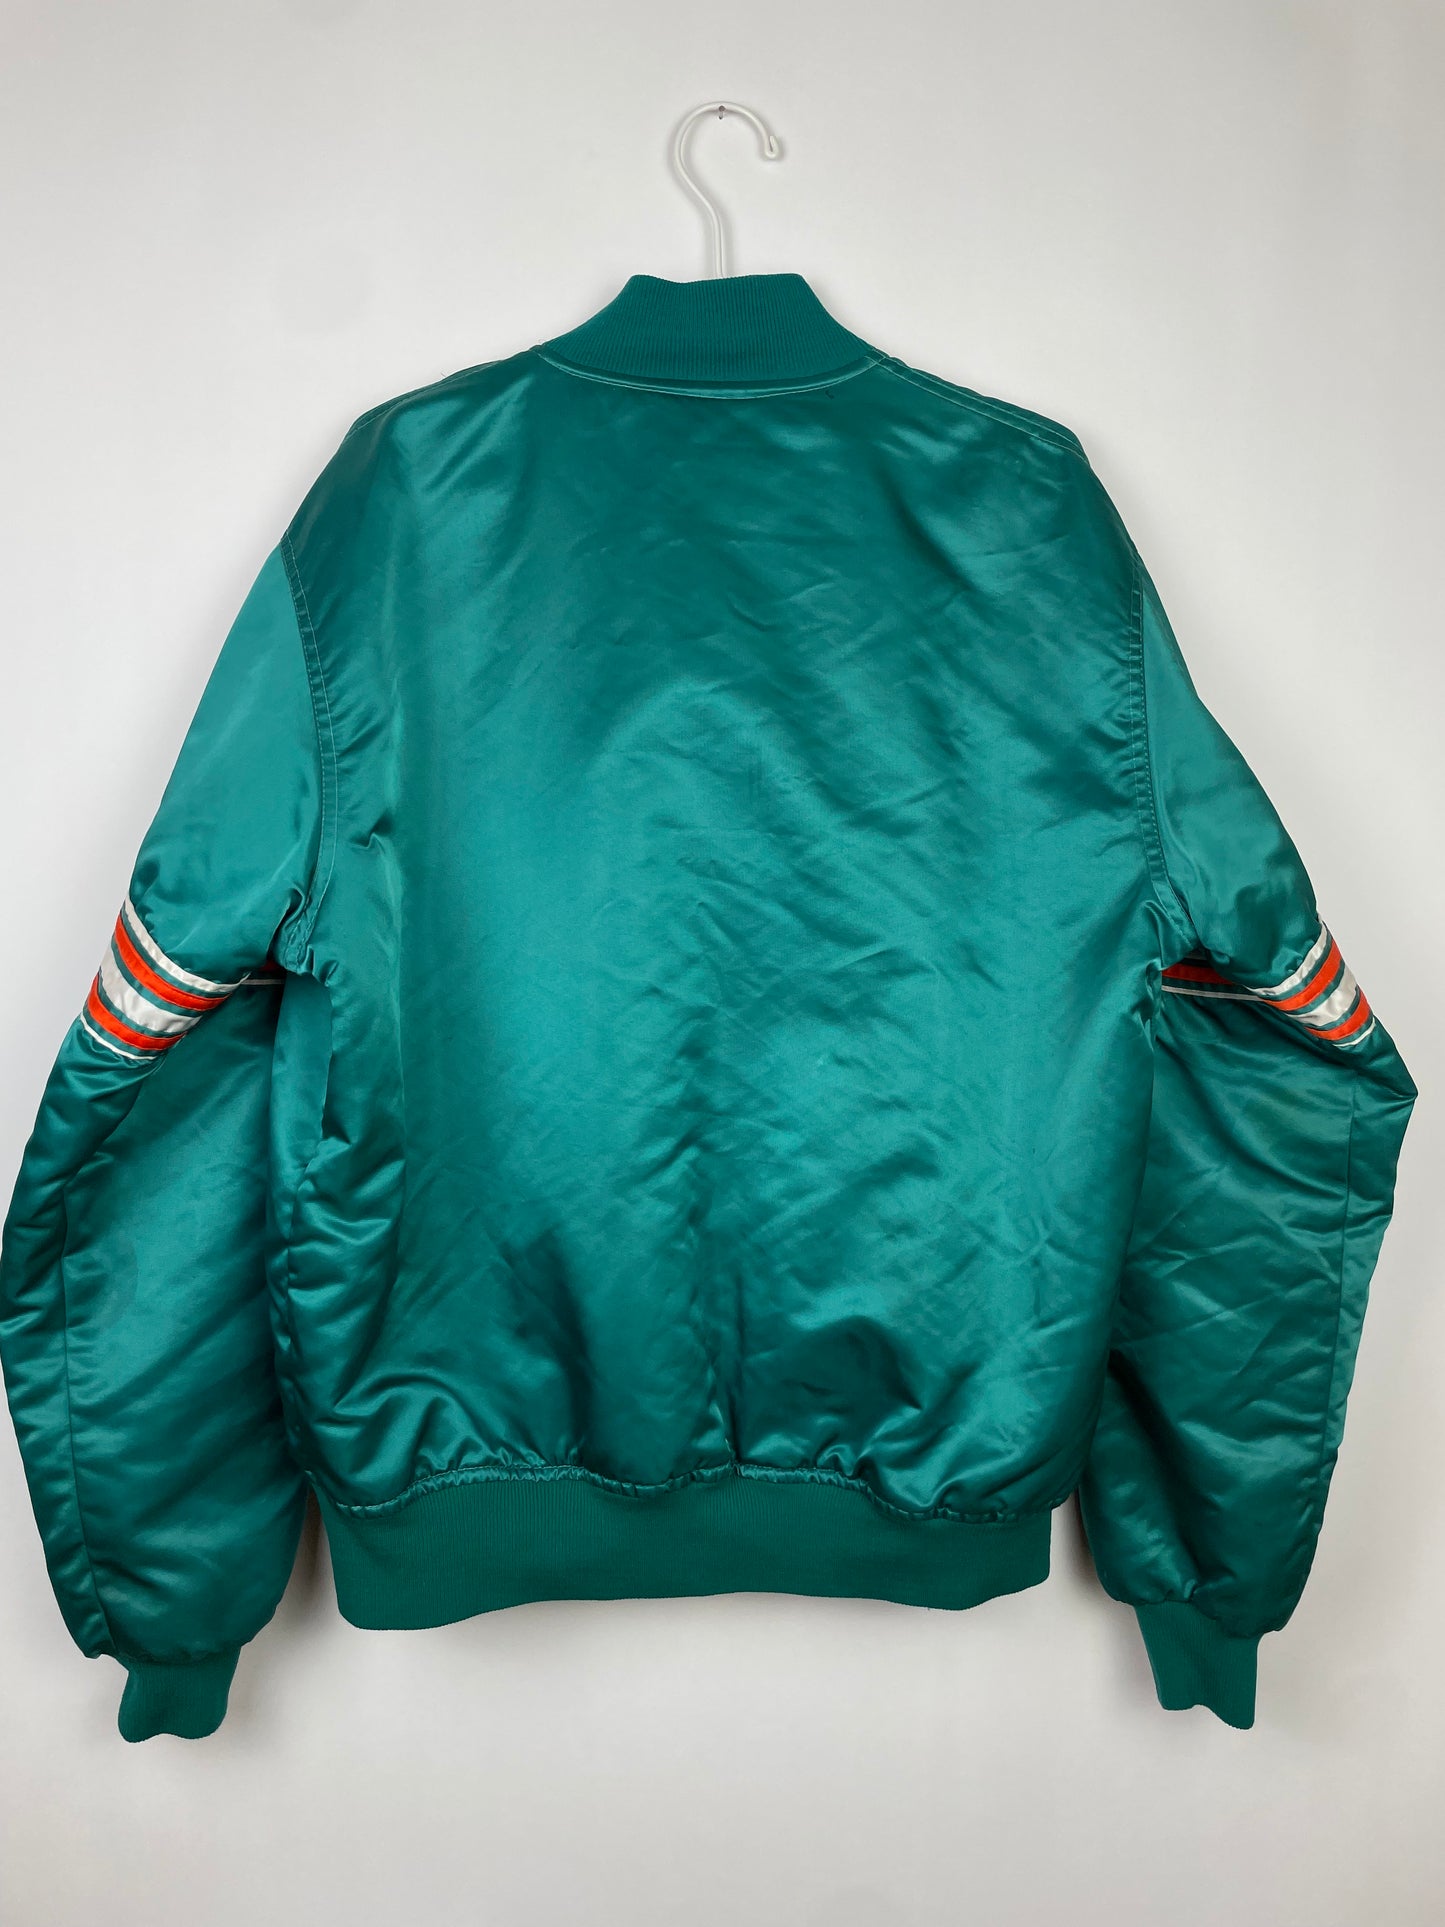 Vintage Starter College Jacket